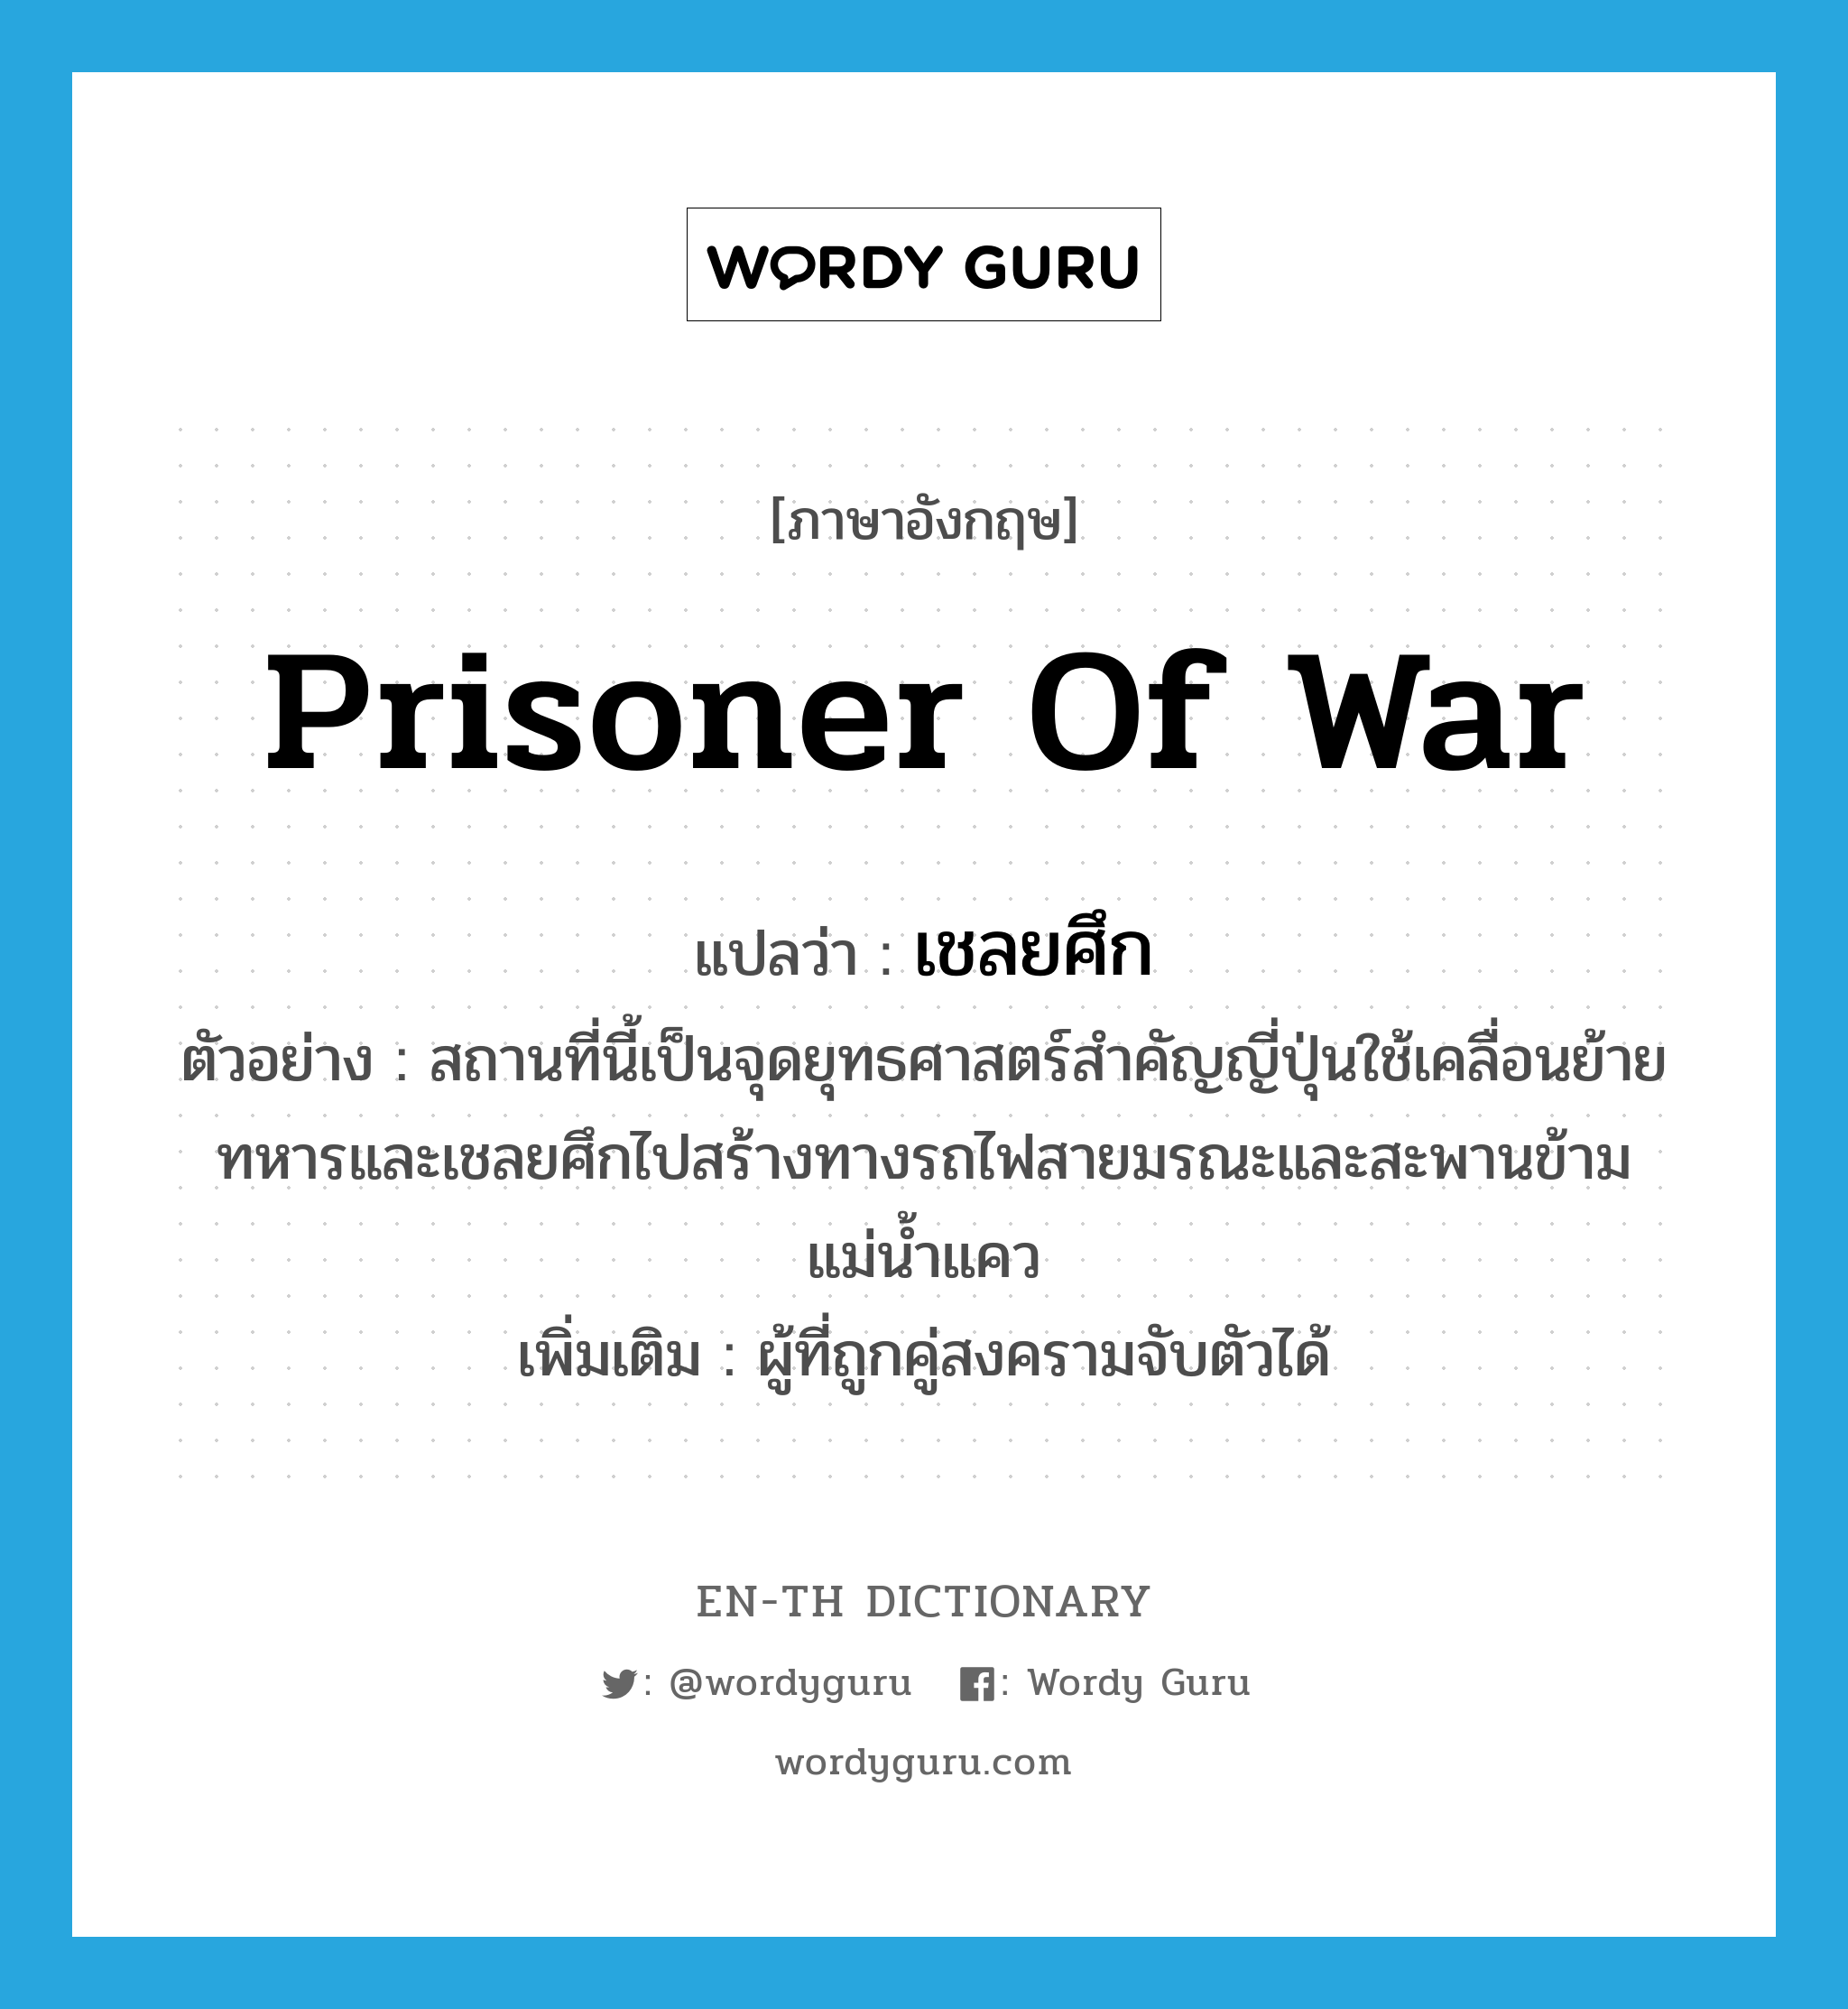 prisoner of war แปลว่า?, คำศัพท์ภาษาอังกฤษ prisoner of war แปลว่า เชลยศึก ประเภท N ตัวอย่าง สถานที่นี้เป็นจุดยุทธศาสตร์สำคัญญี่ปุ่นใช้เคลื่อนย้ายทหารและเชลยศึกไปสร้างทางรถไฟสายมรณะและสะพานข้ามแม่น้ำแคว เพิ่มเติม ผู้ที่ถูกคู่สงครามจับตัวได้ หมวด N